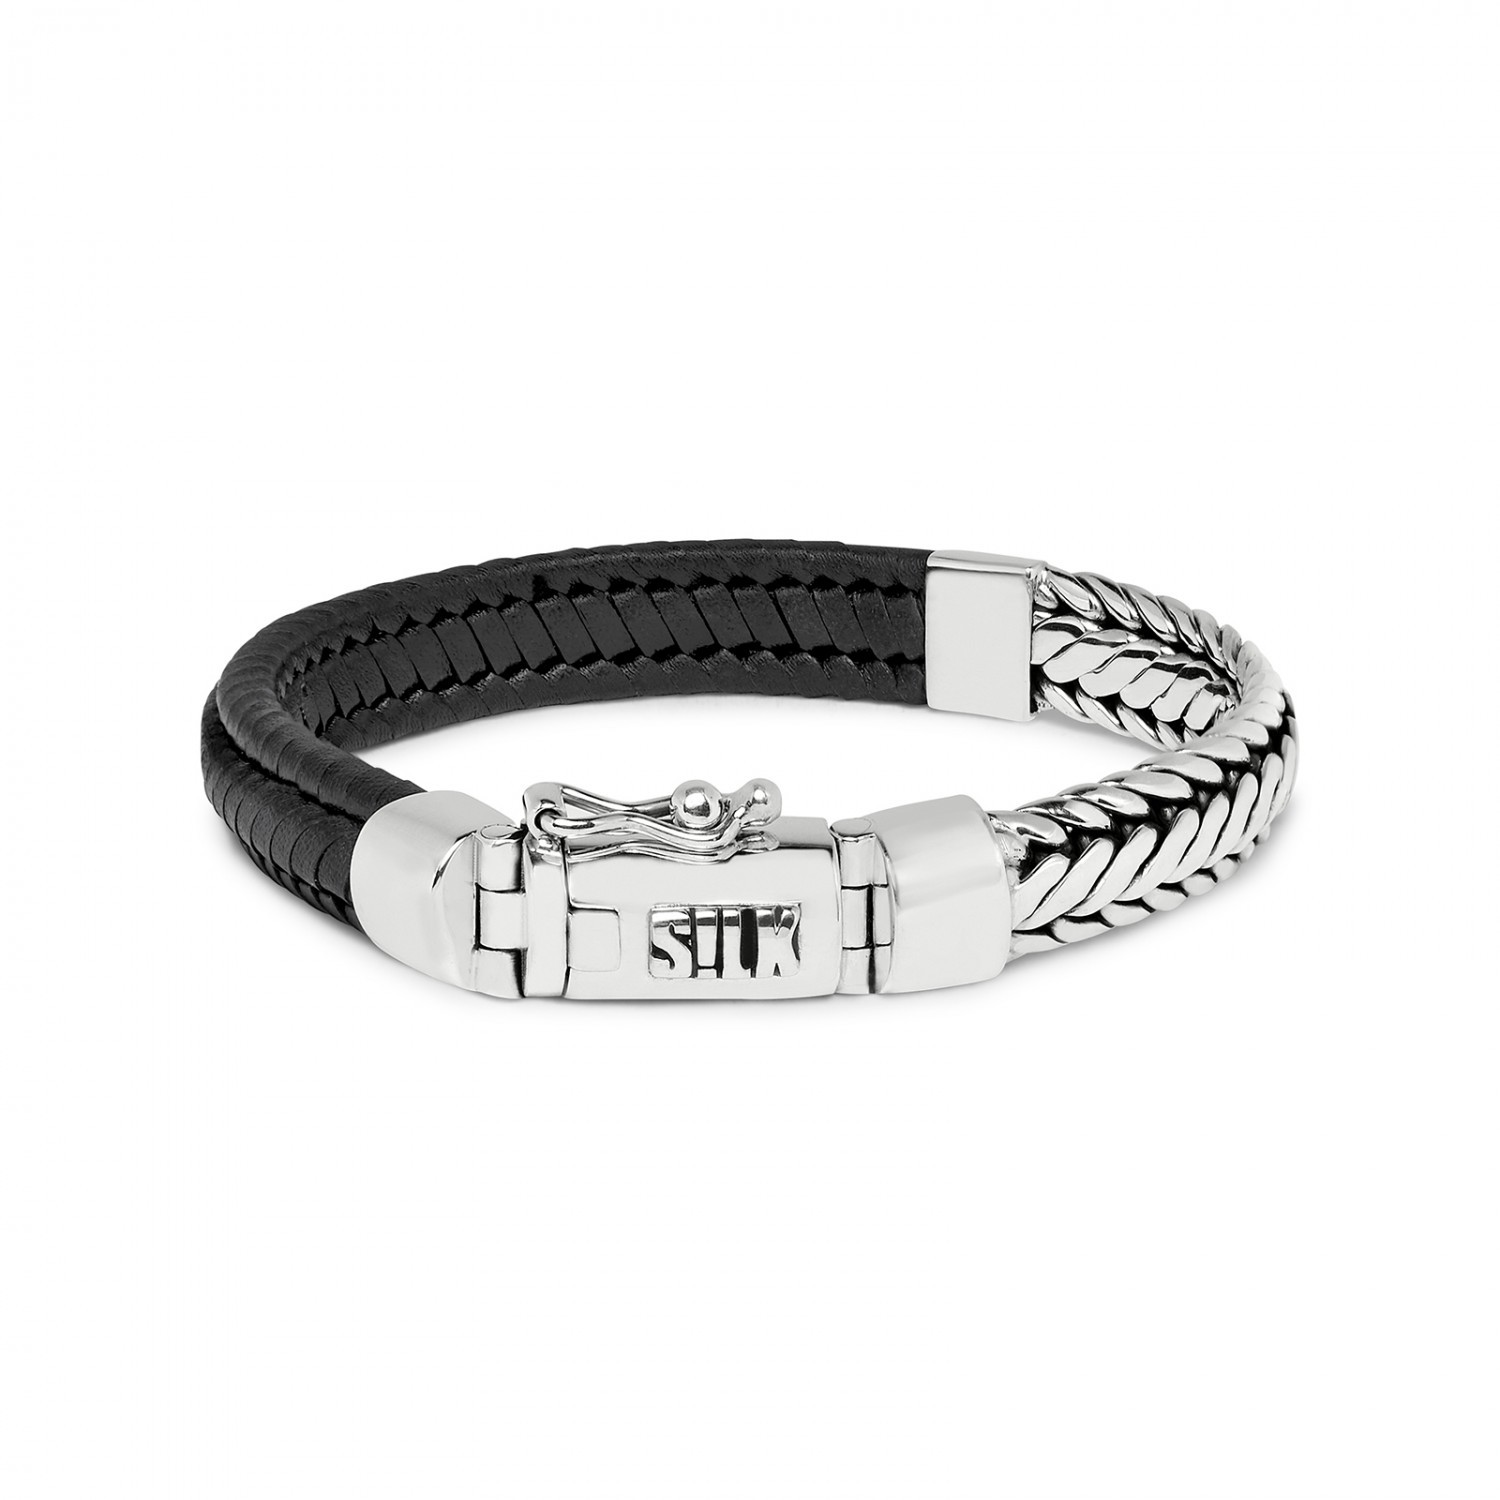 Oceaan wet Neuropathie 193BLK armband zilver & leer zwart | SILK Jewellery© | Official webshop